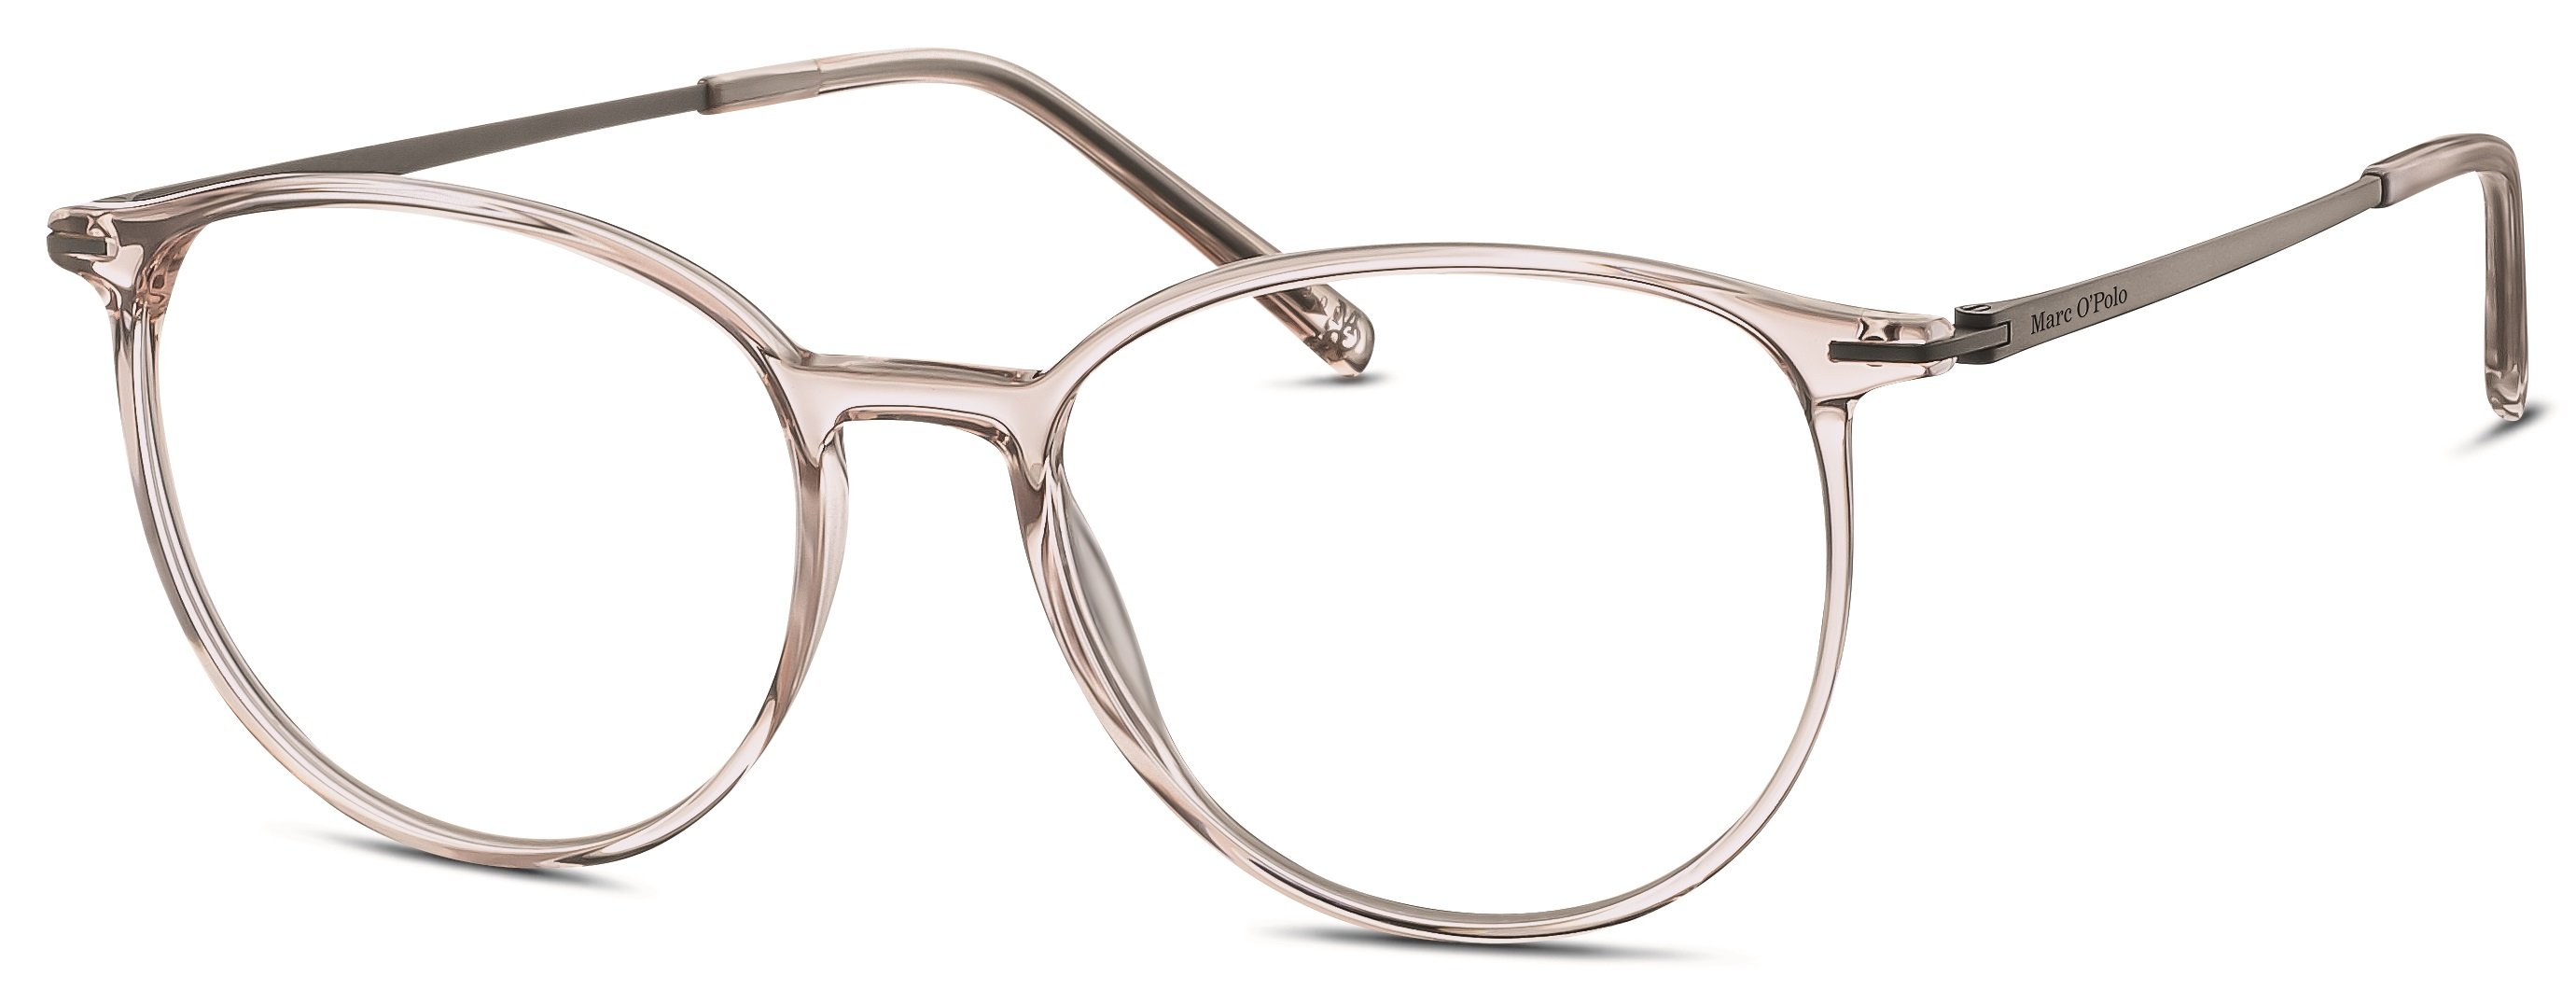 Das Bild zeigt die Korrektionsbrille 503148 50 von der Marke Marc o Polo in beige transparent.